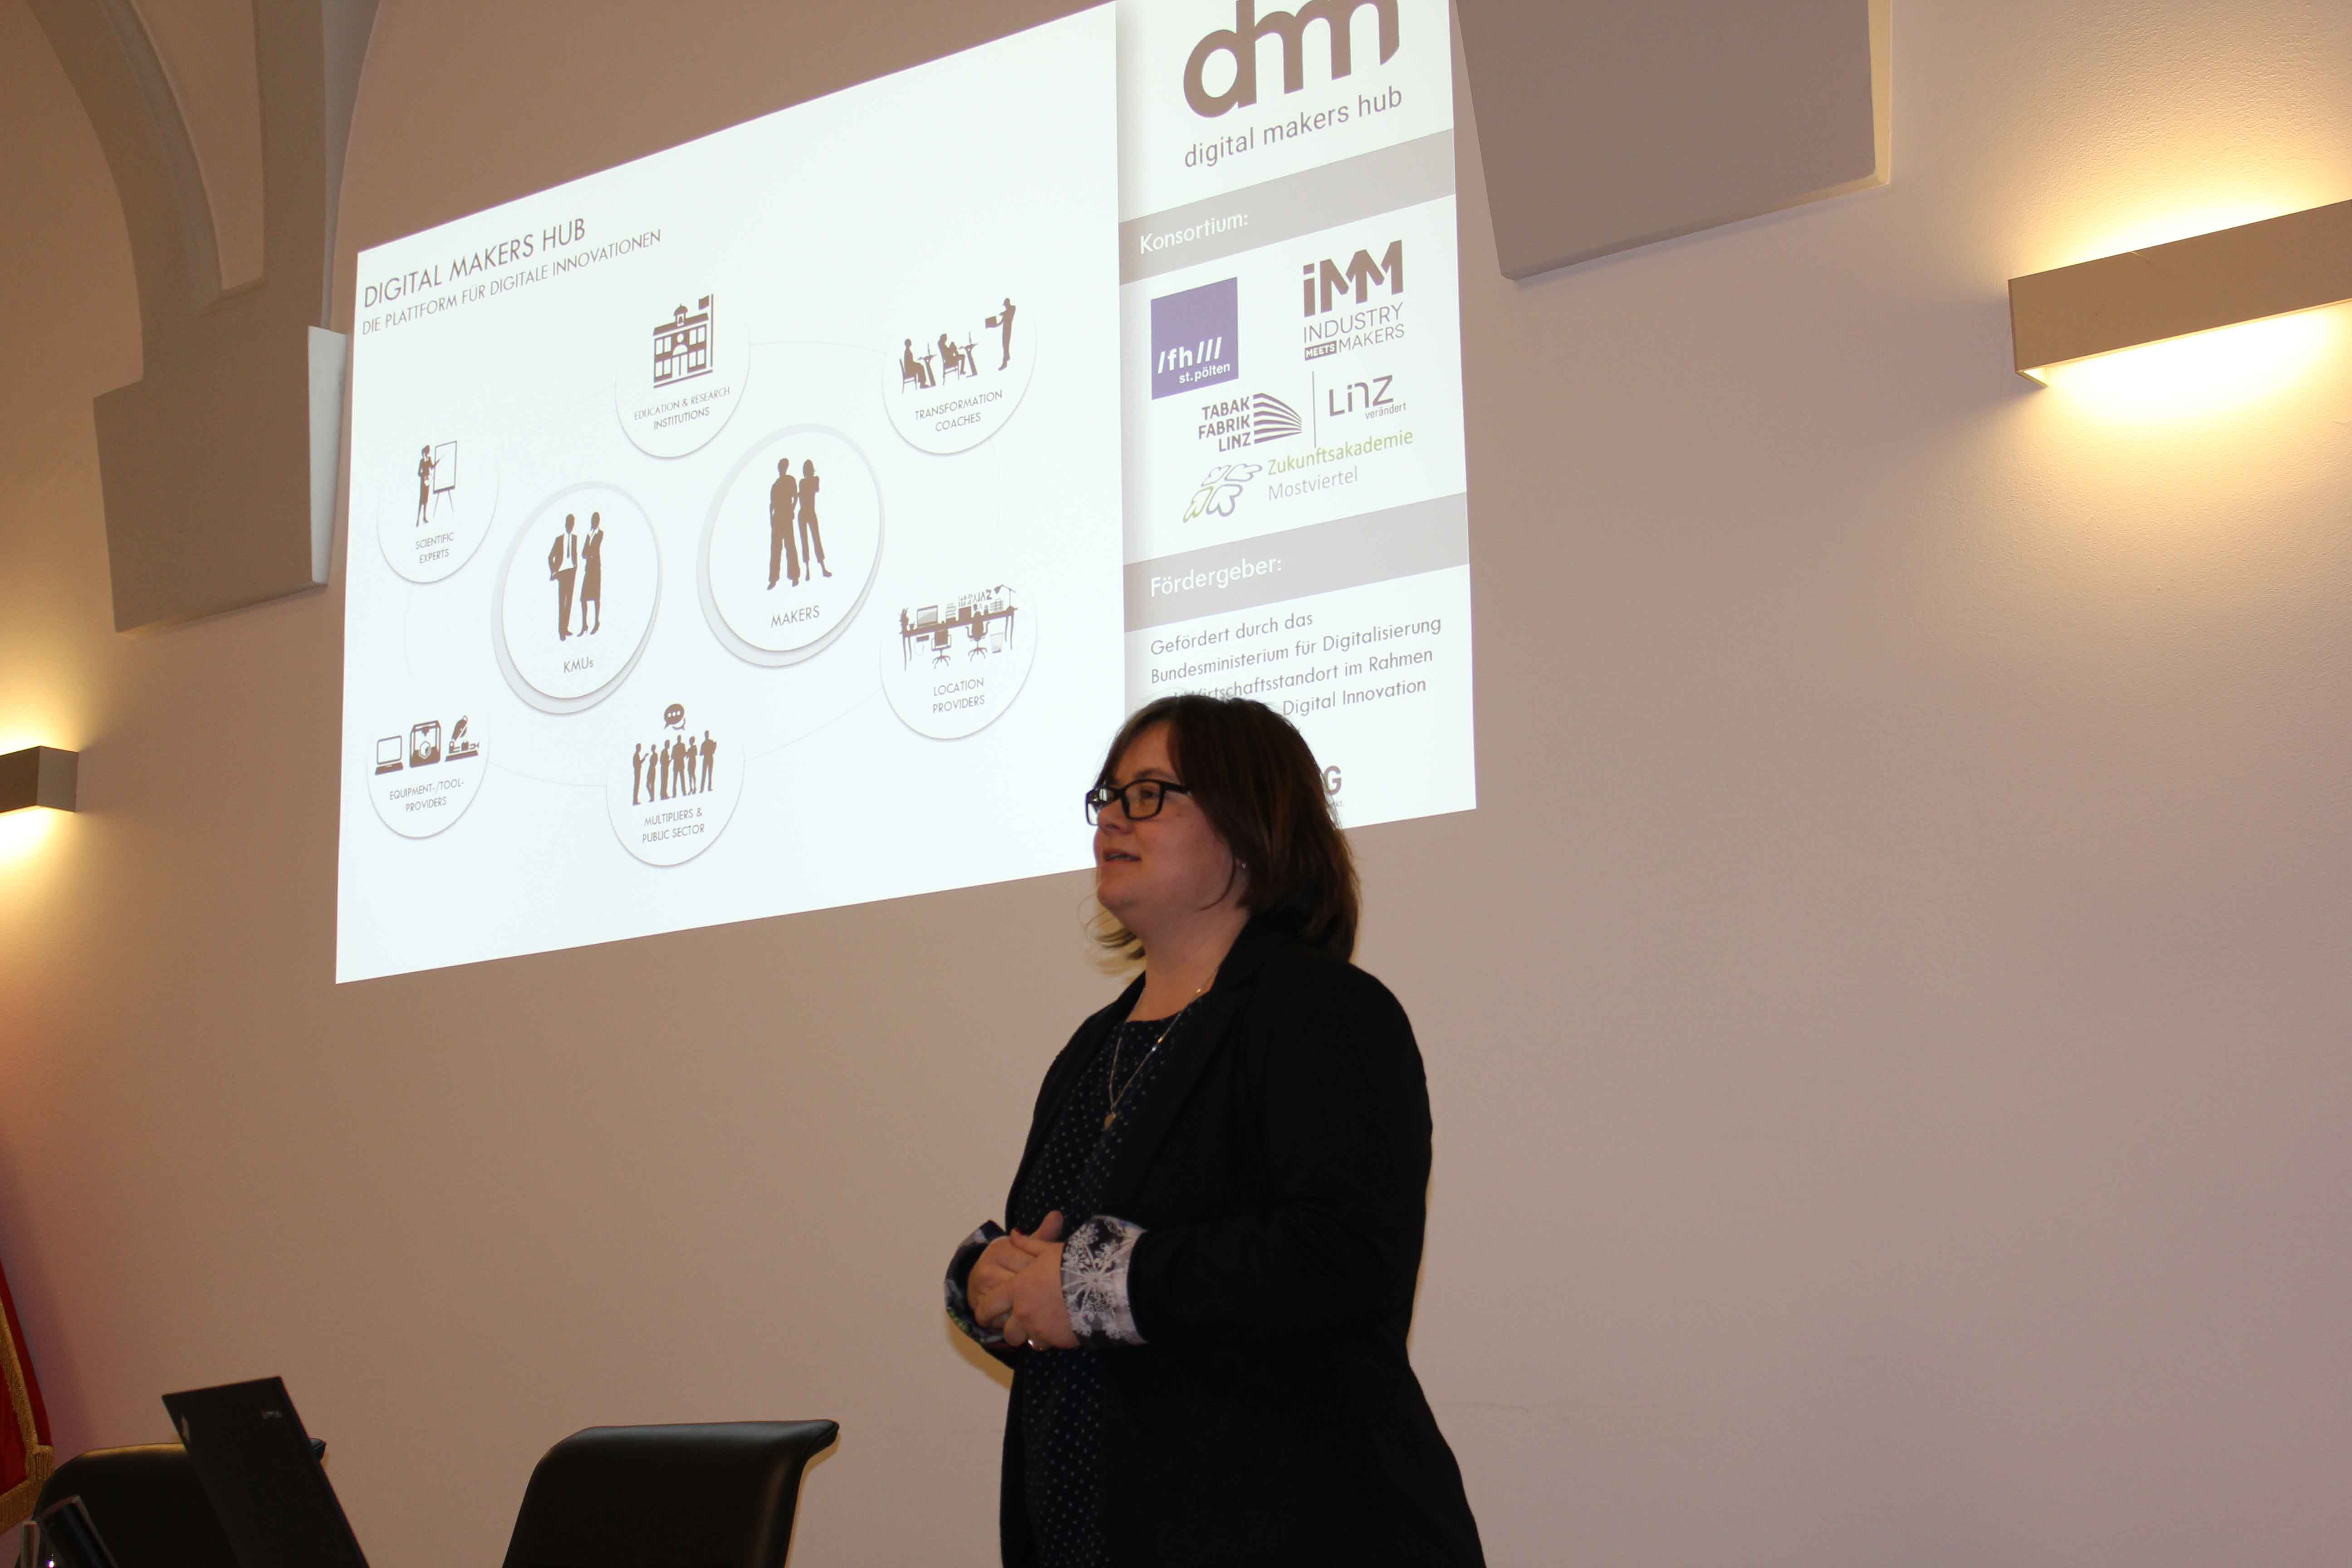 Frau Permoser präsentiert vor einer Leinwand den Digital Makers Hub am SMARTUP Forum